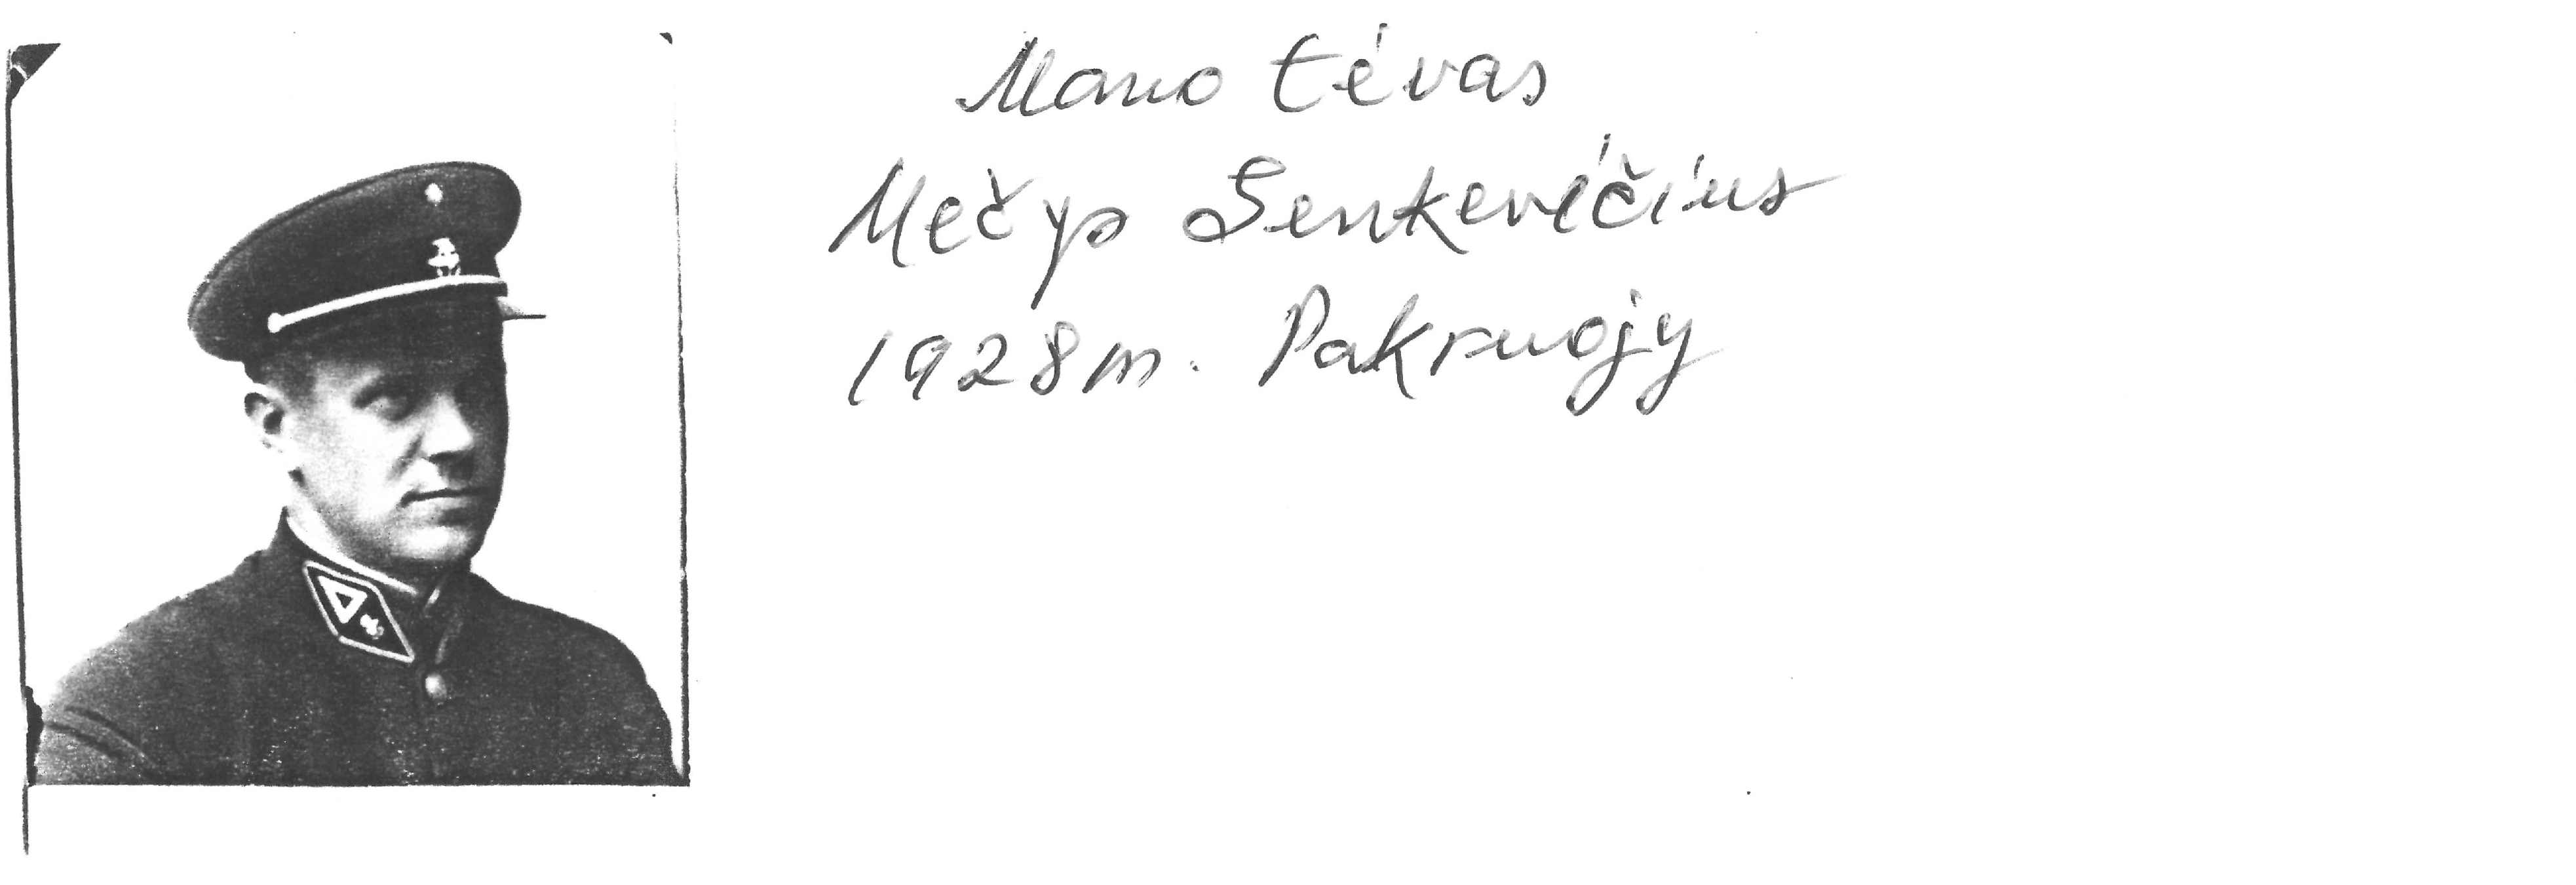 Rašytojo, savaitraščio „Tėviškės Žiburiai“ redaktoriaus Česlovo Senkevičiaus tėvo nuotraukos kopija su prierašu ranka: „Mano tėvas Mečys Senkevičius 1928 m. Pakruojy“